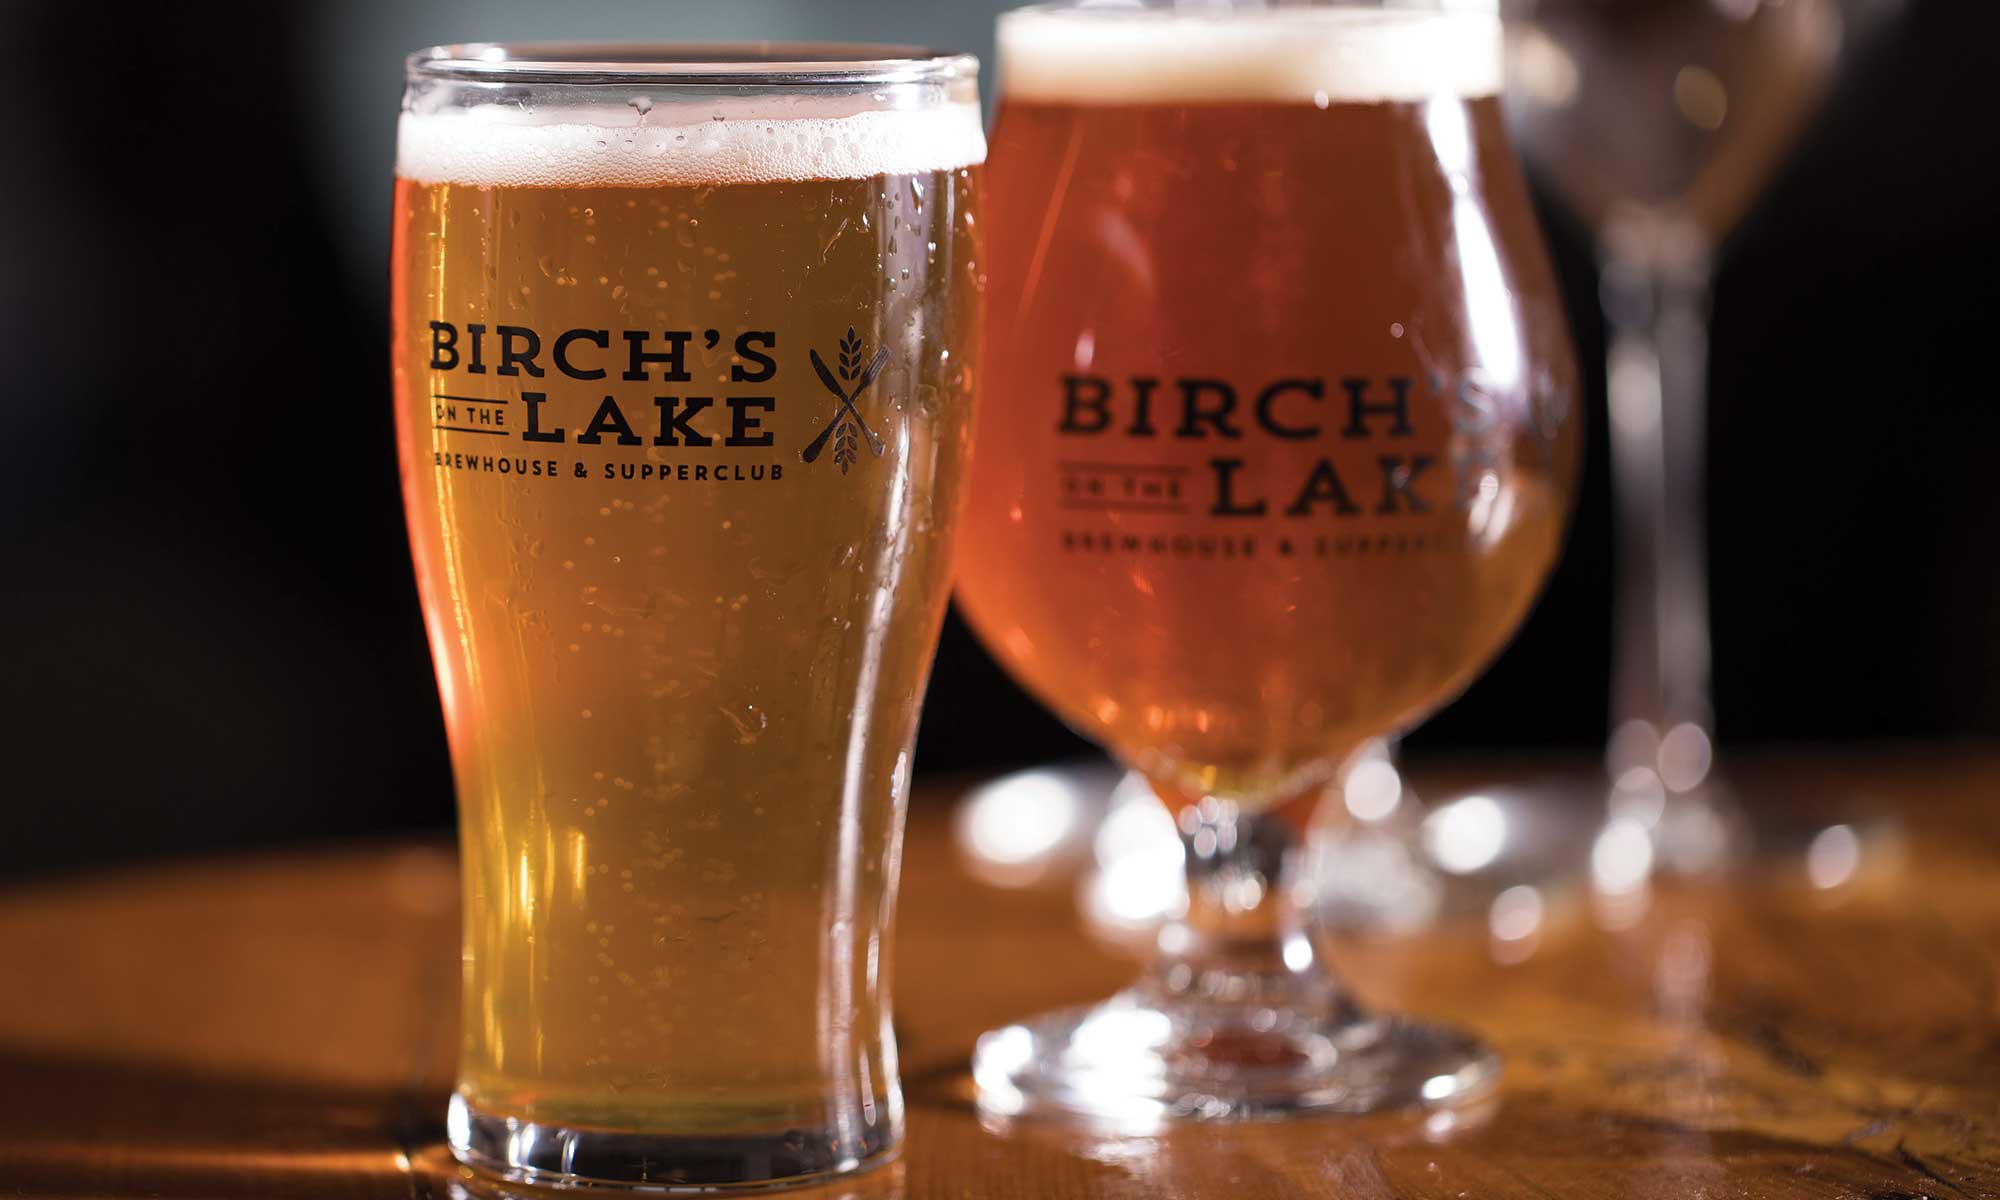 Birch's Beer